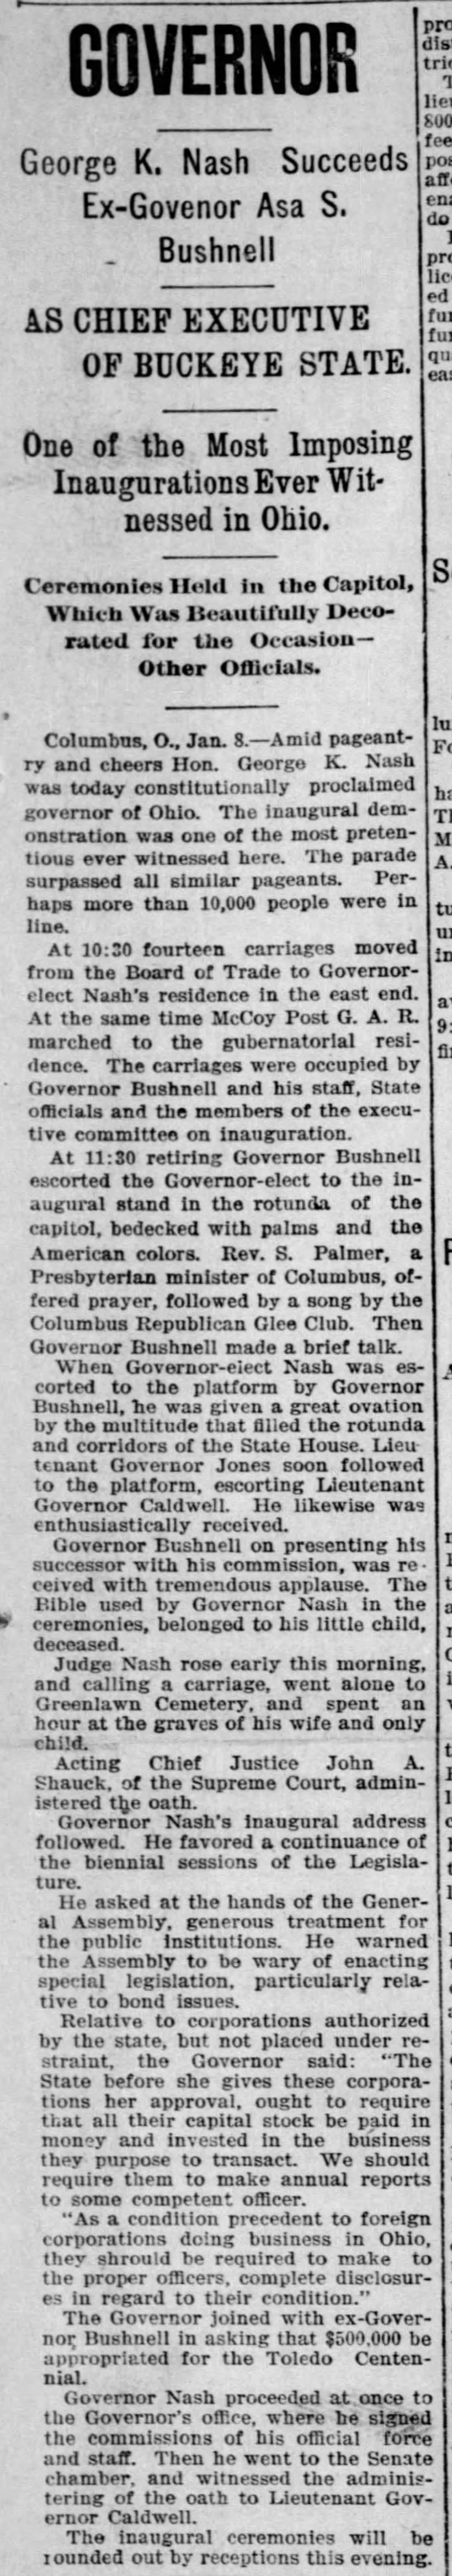 Governor George K. Nash Succeeds Ex-Governor Asa S. Bushnell